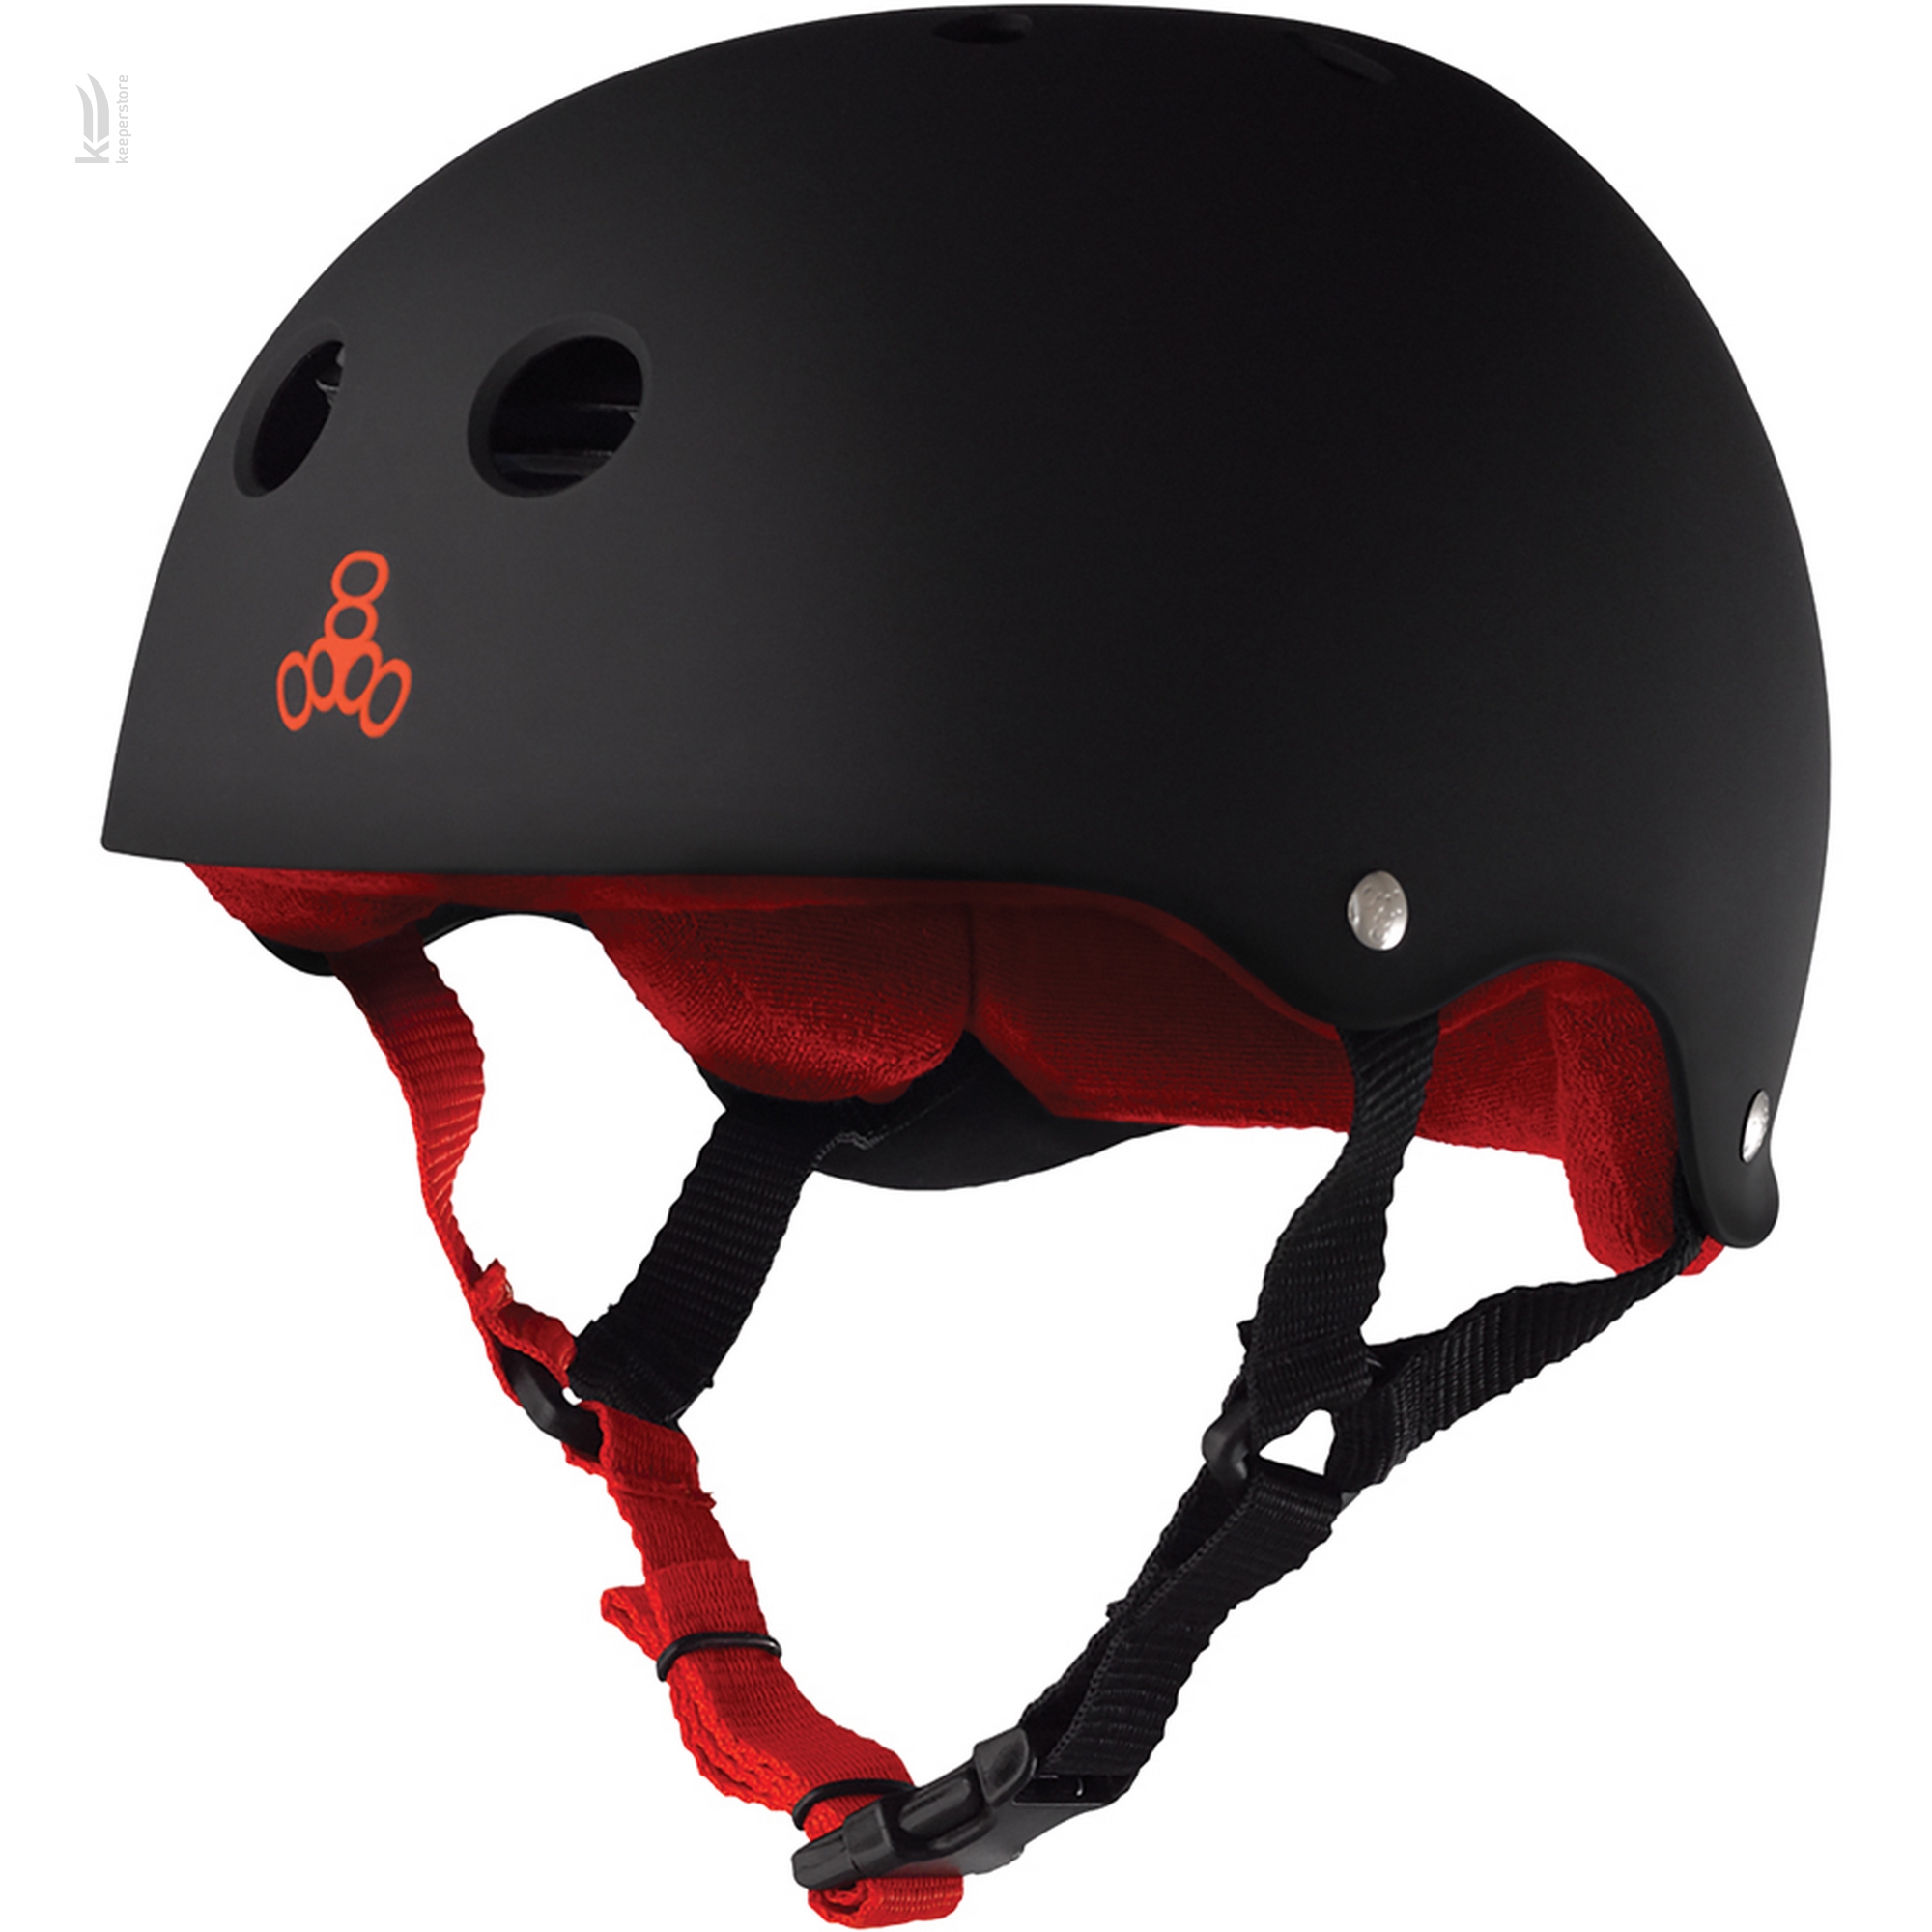 Детский шлем для скейтборда Triple8 Sweatsaver Helmet Black w/ Red (L)